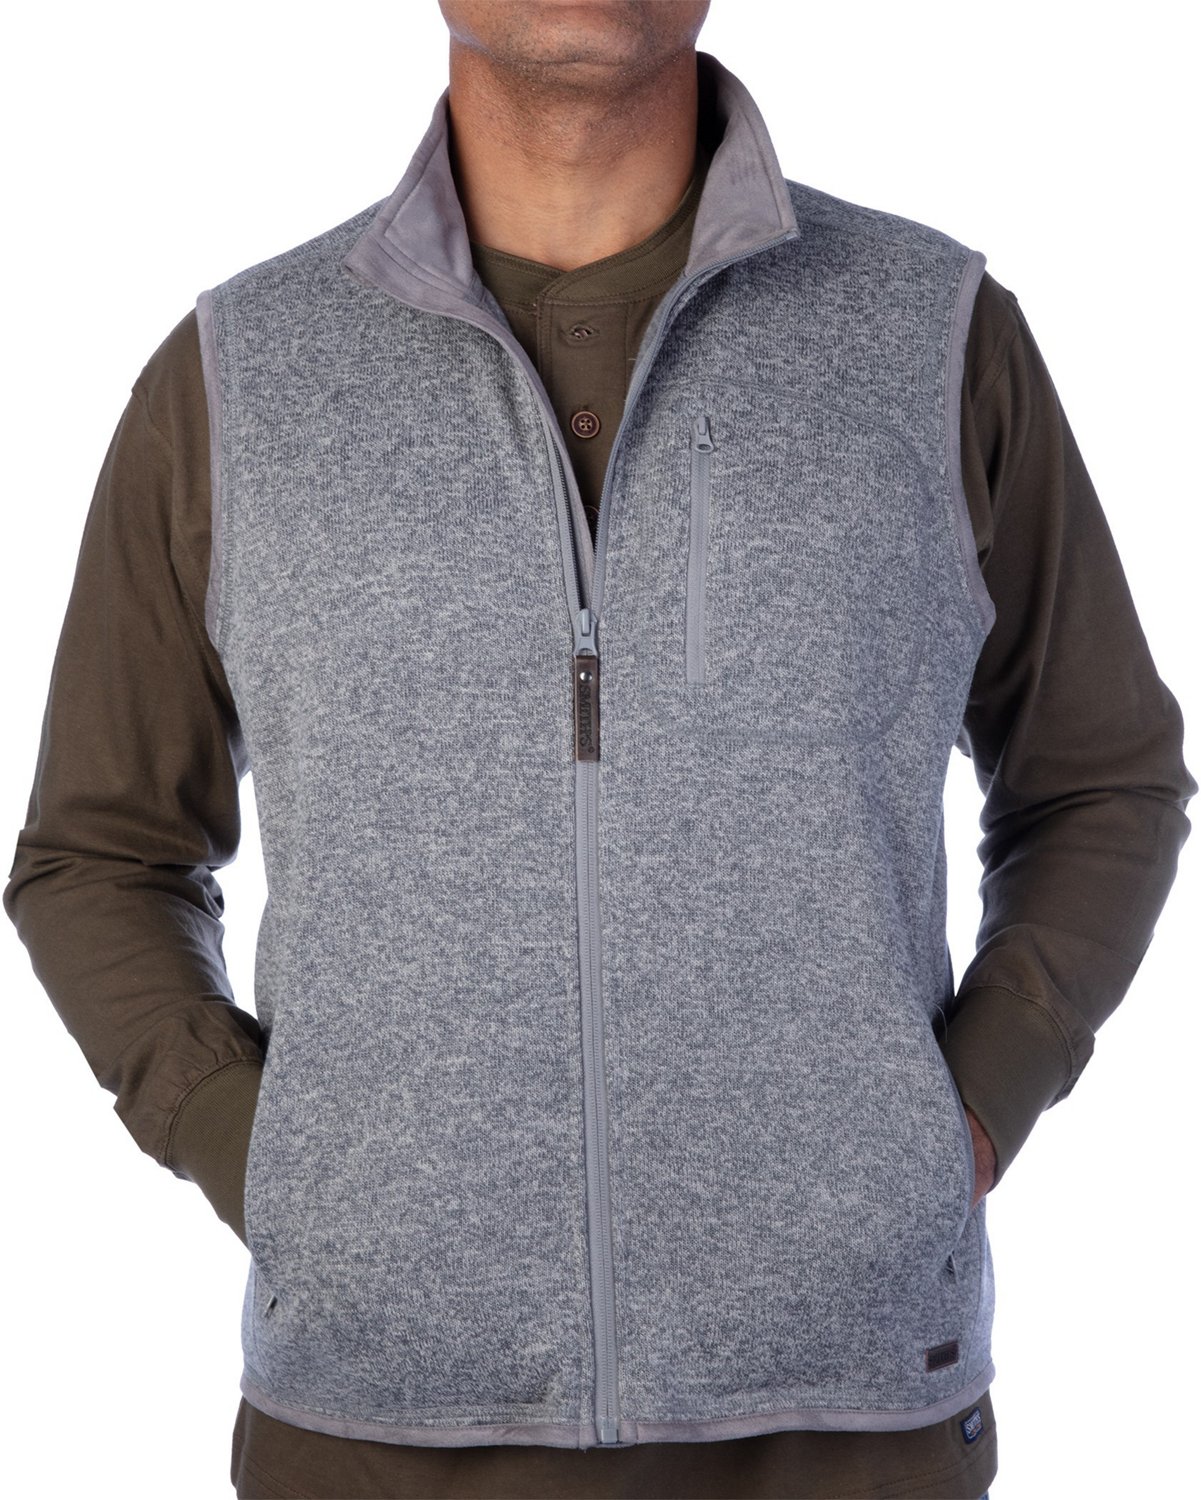 Smiths Workwear Mens Full Zip Sweater Fleece Vest